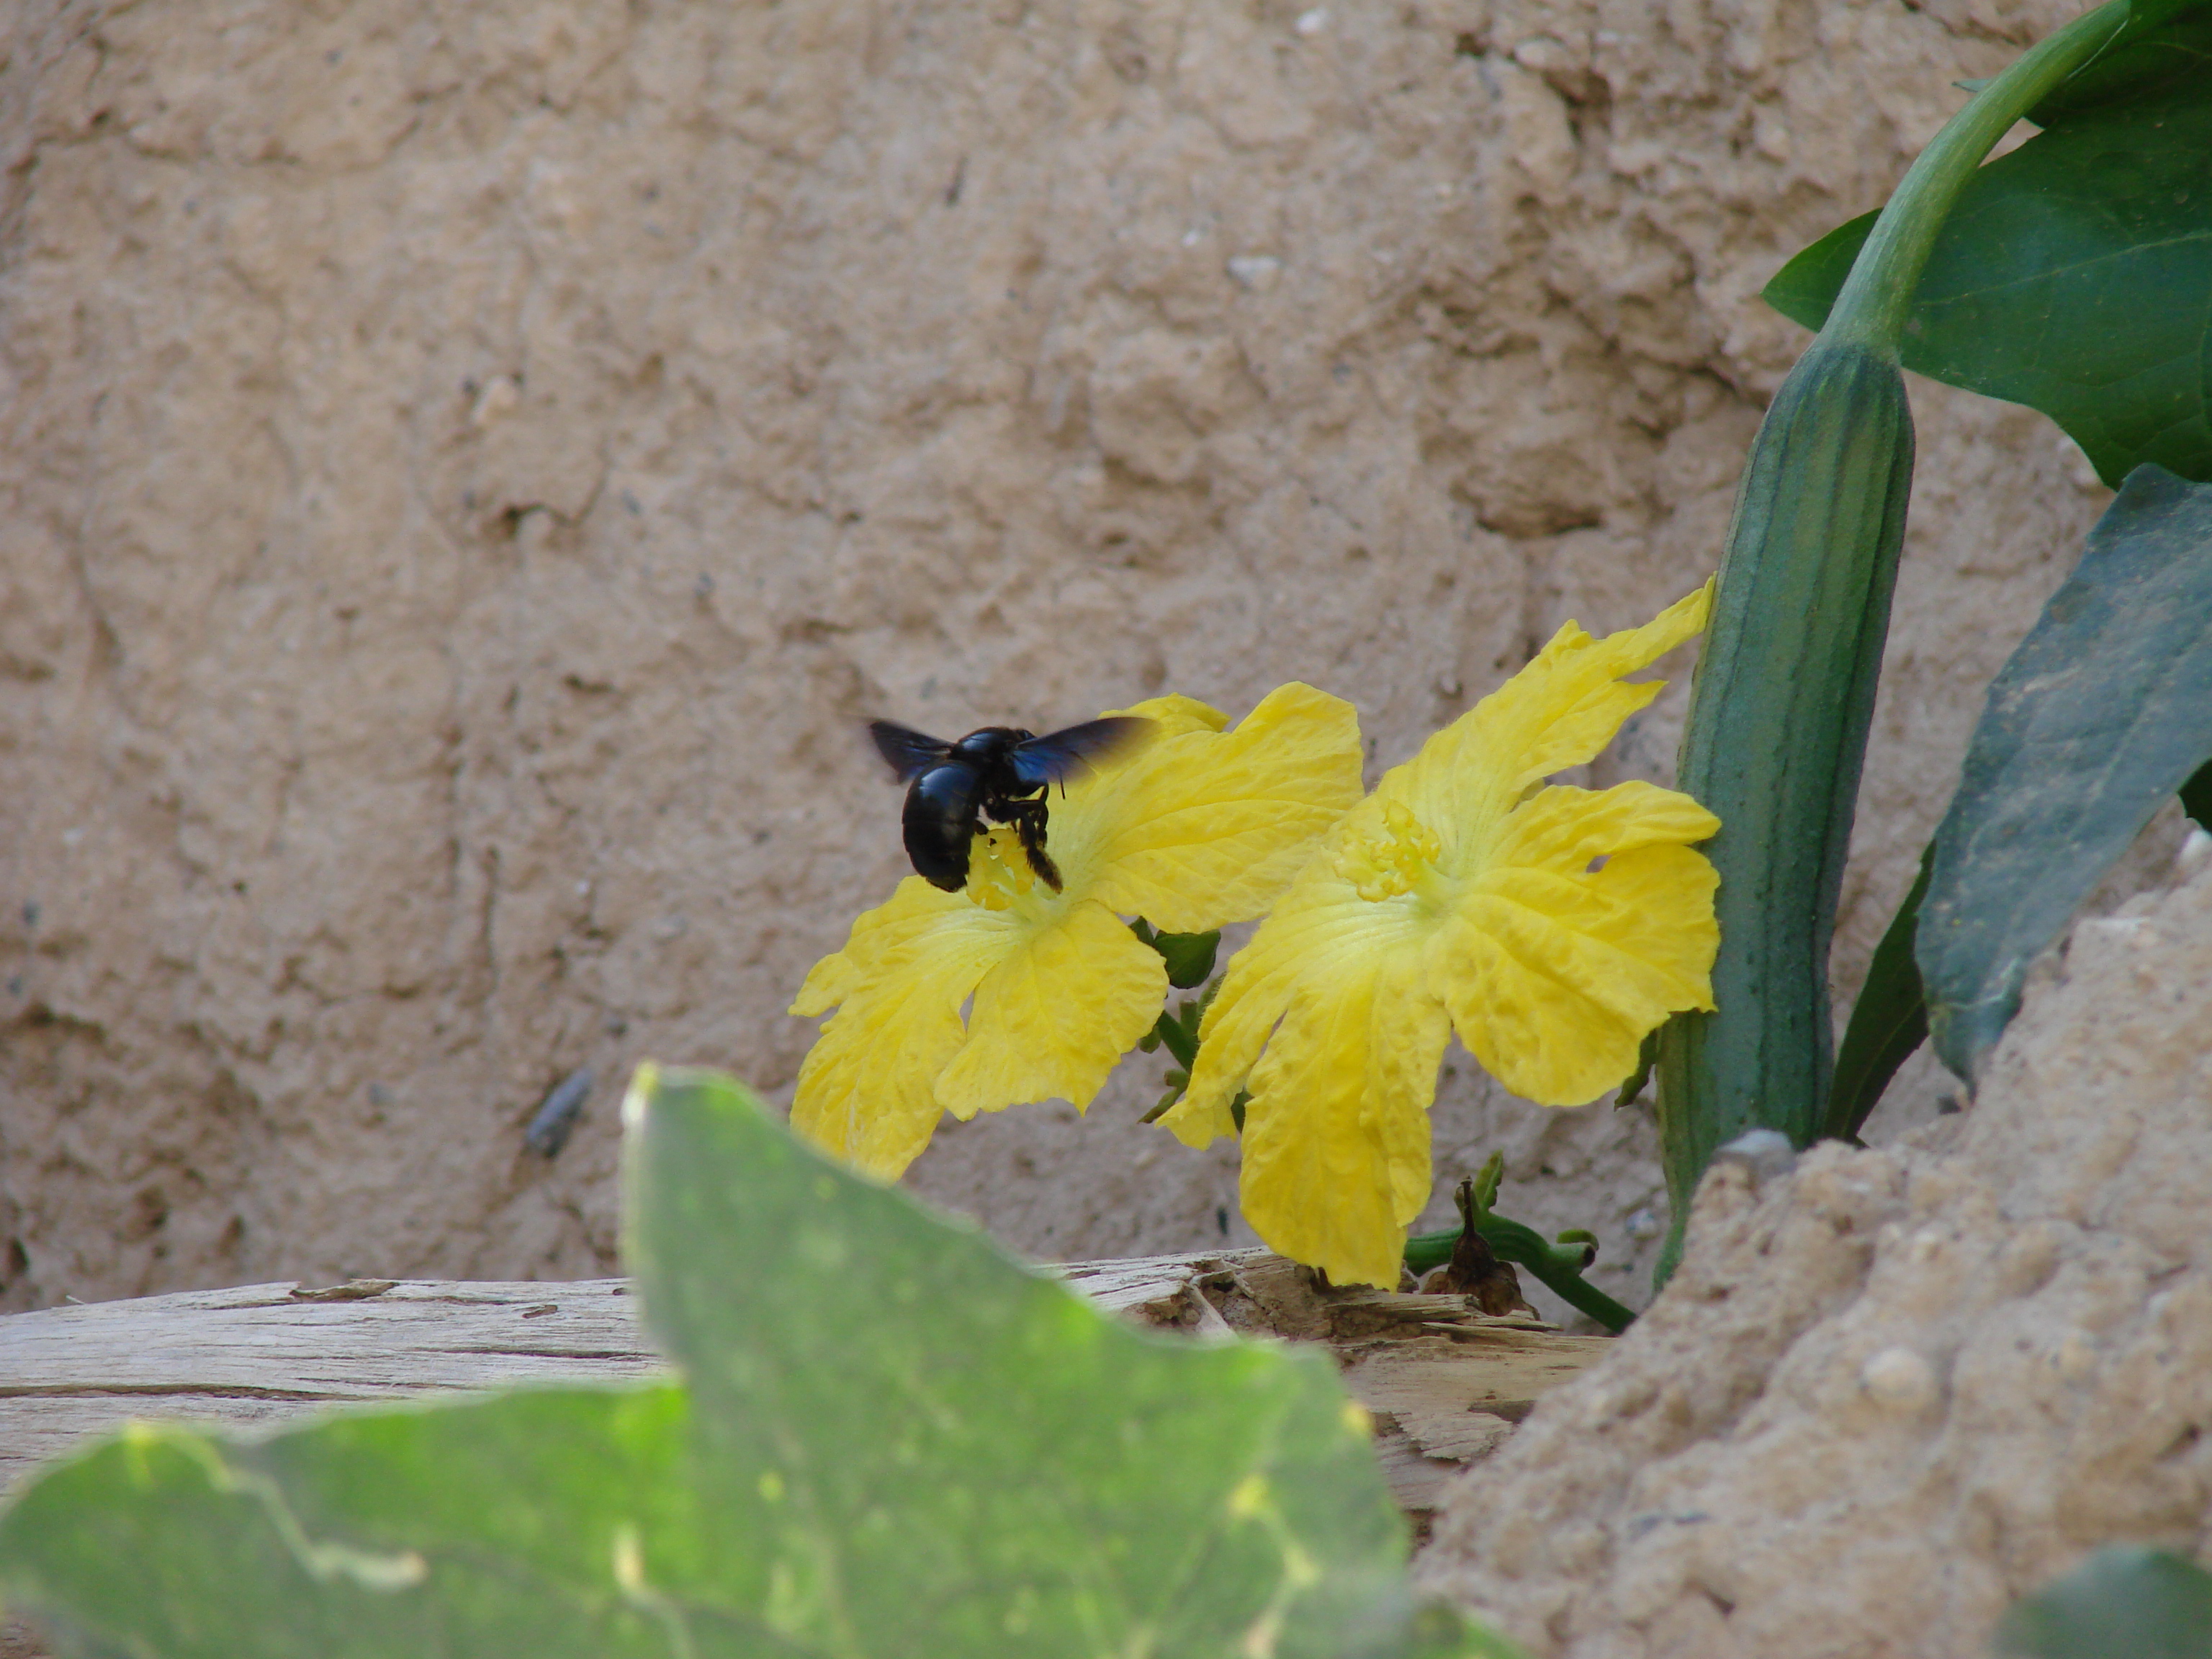 Nahaufnahme: Eine große, schwarz-bläuliche Biene fliegt eine große, gelbe Blüte an. Grüne Ranken und Blätter und eine kleine Gurkenfrucht sind am Bildrand zu sehen. Im Hintergrund: trockene braune Erde.